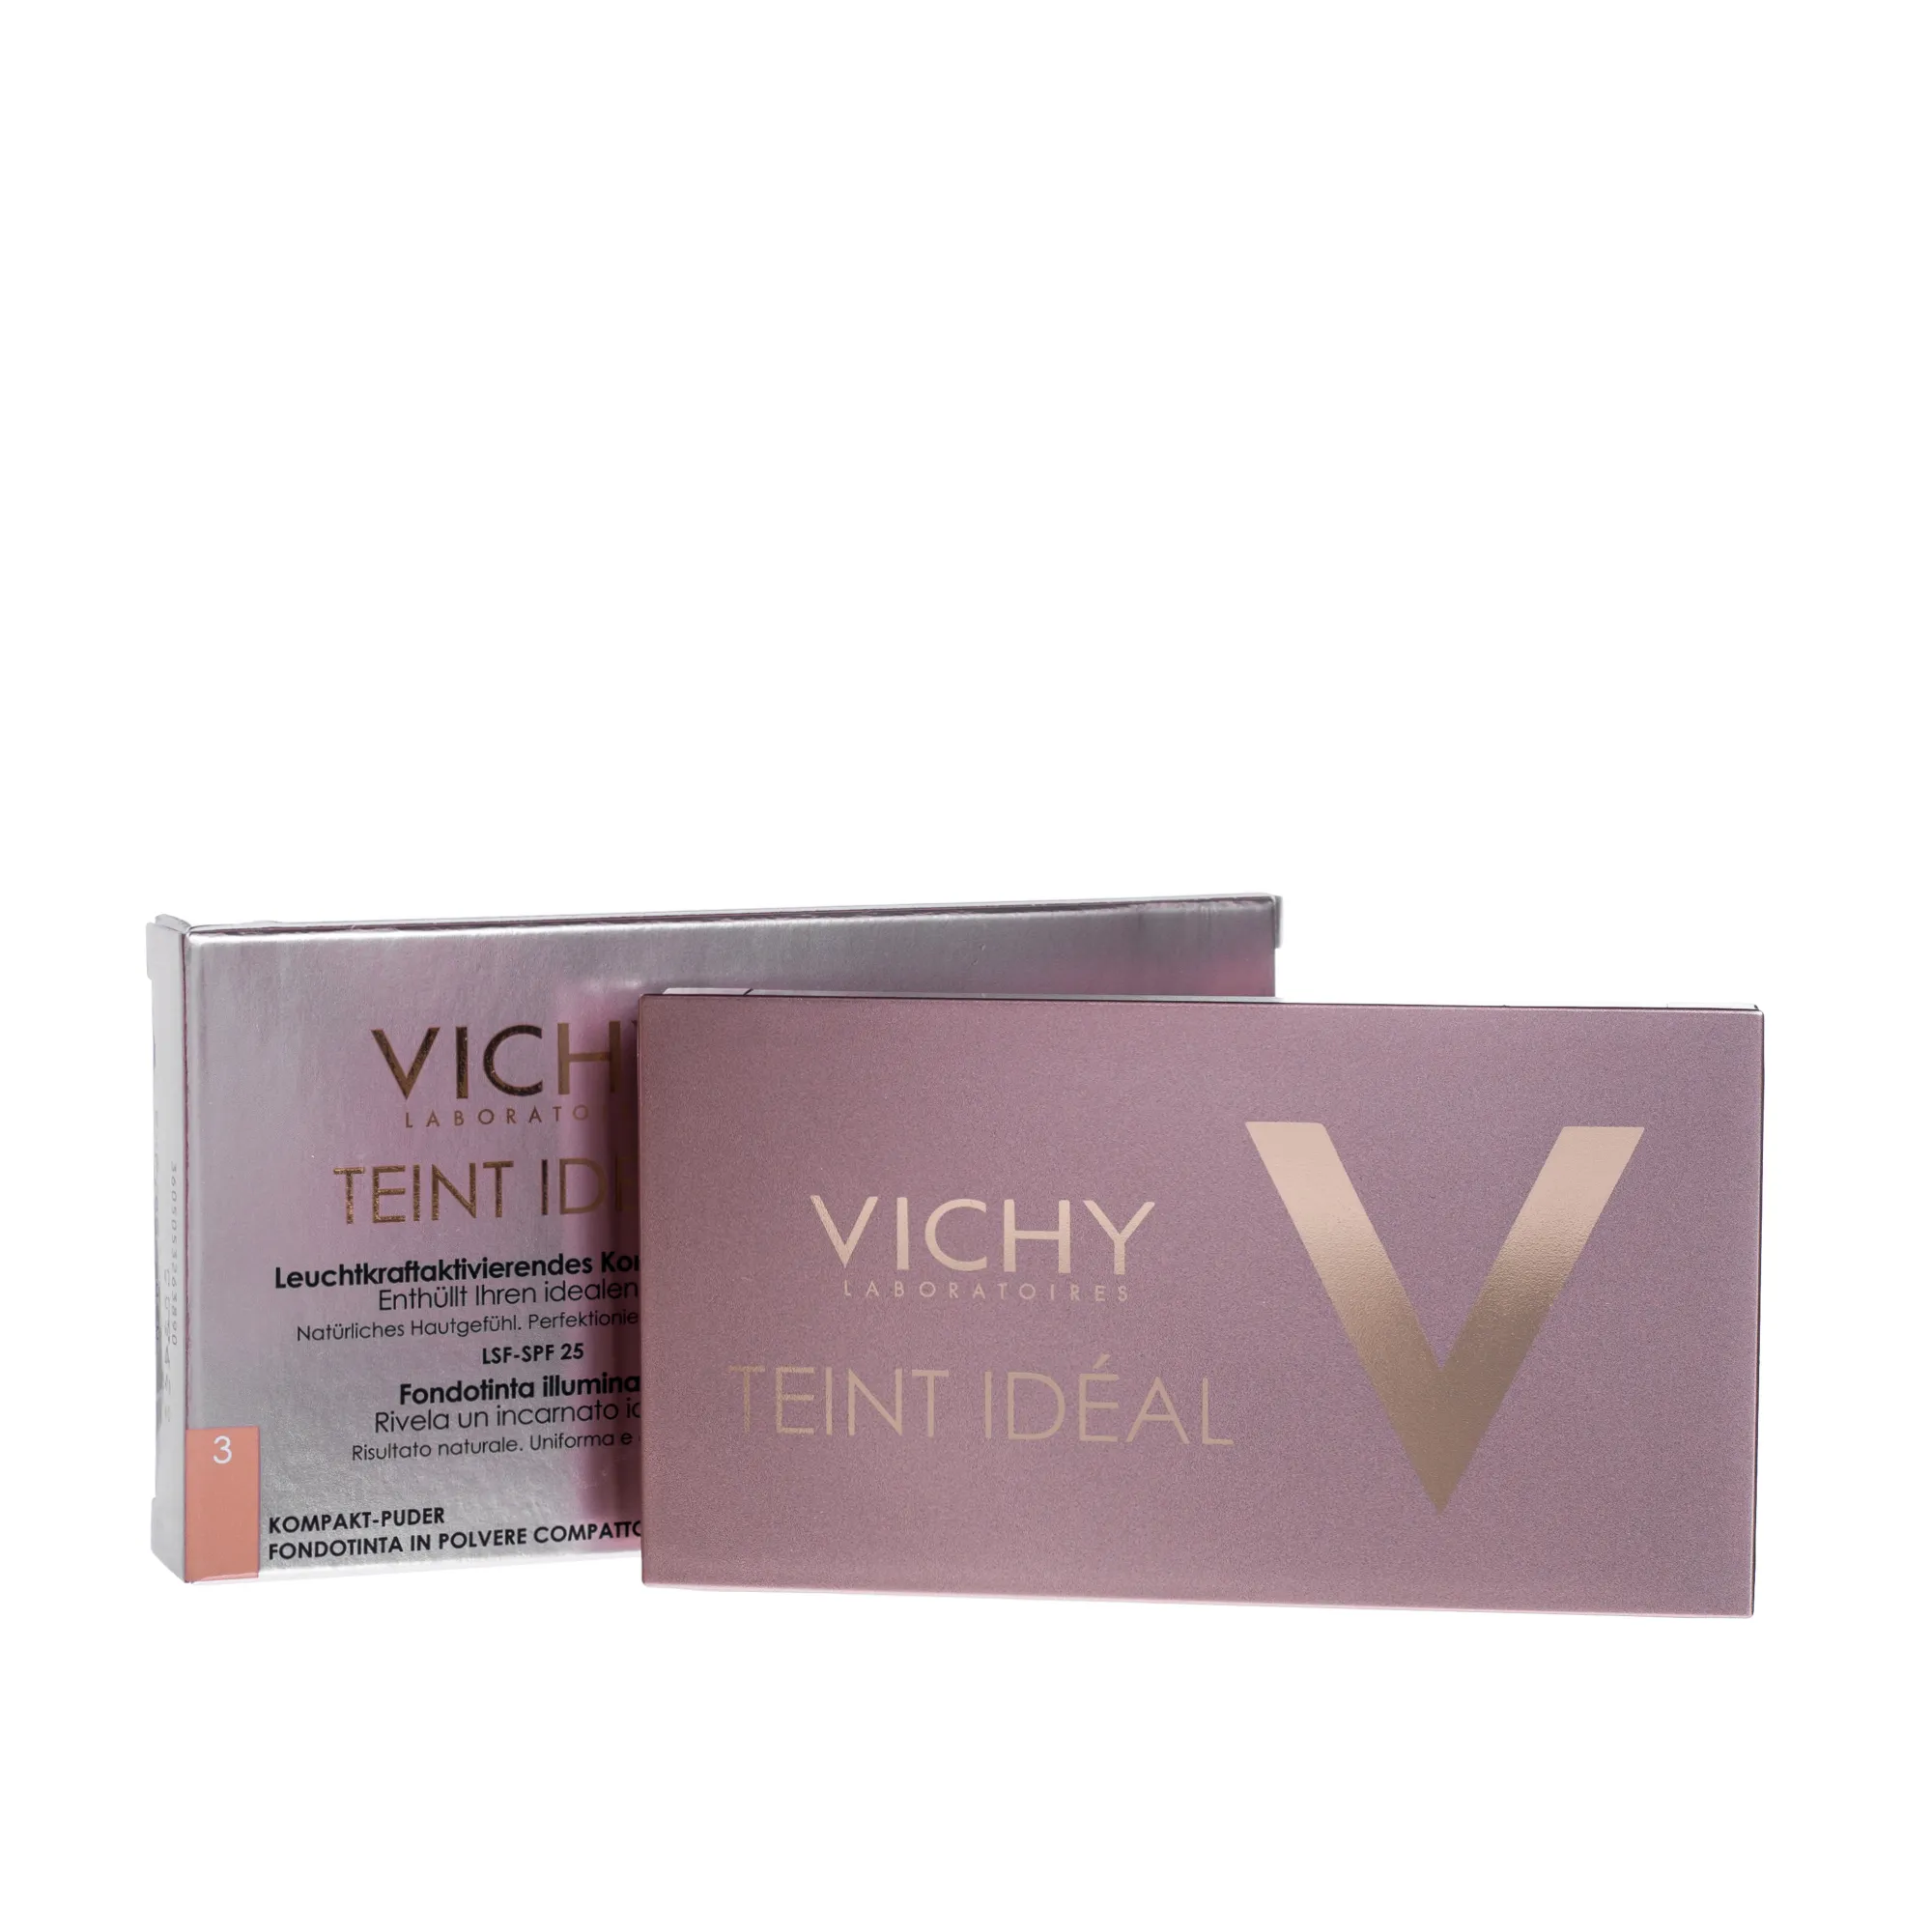 Vichy Teint Ideal Compact, podkład rozświetlający w kompakcie SPF 25, odcień 3 Tan, 9,5 g 